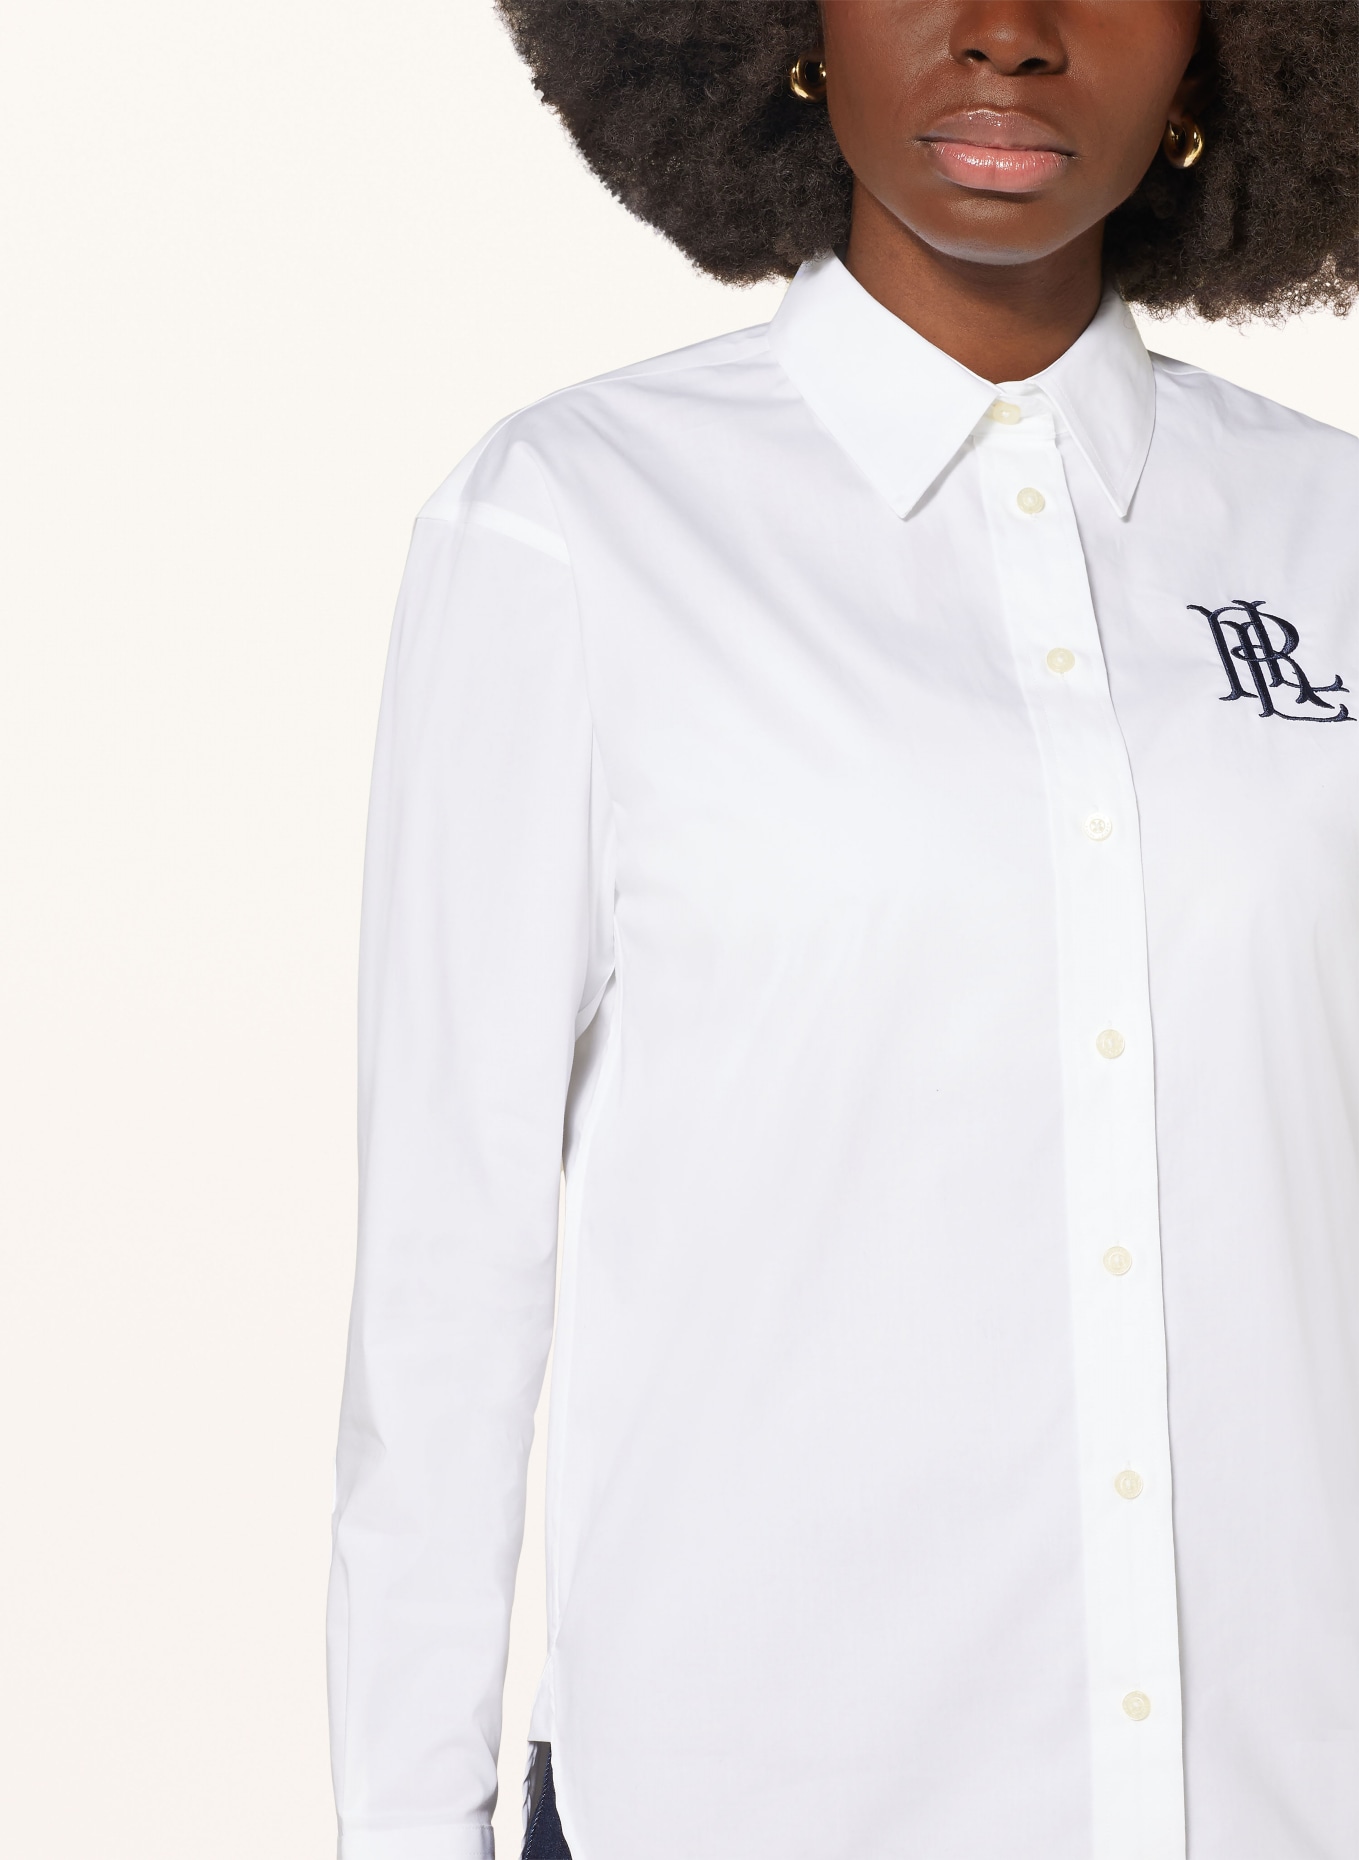 LAUREN RALPH LAUREN Shirt blouse, Color: WHITE (Image 4)